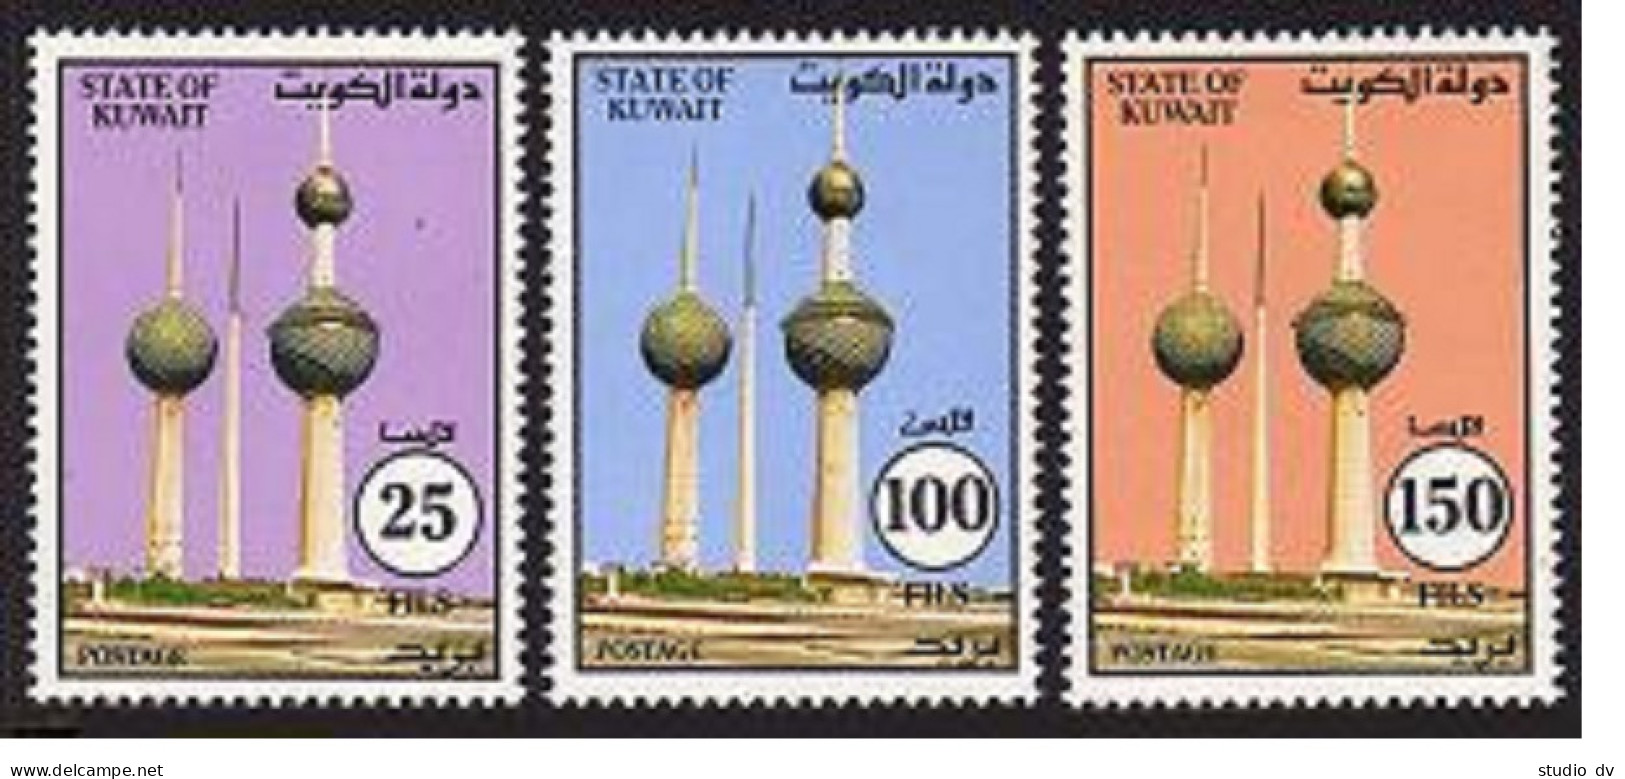 Kuwait 1205-1207, MNH. Michel 1337-1339. Kuwait Towers, 1993. - Kuwait